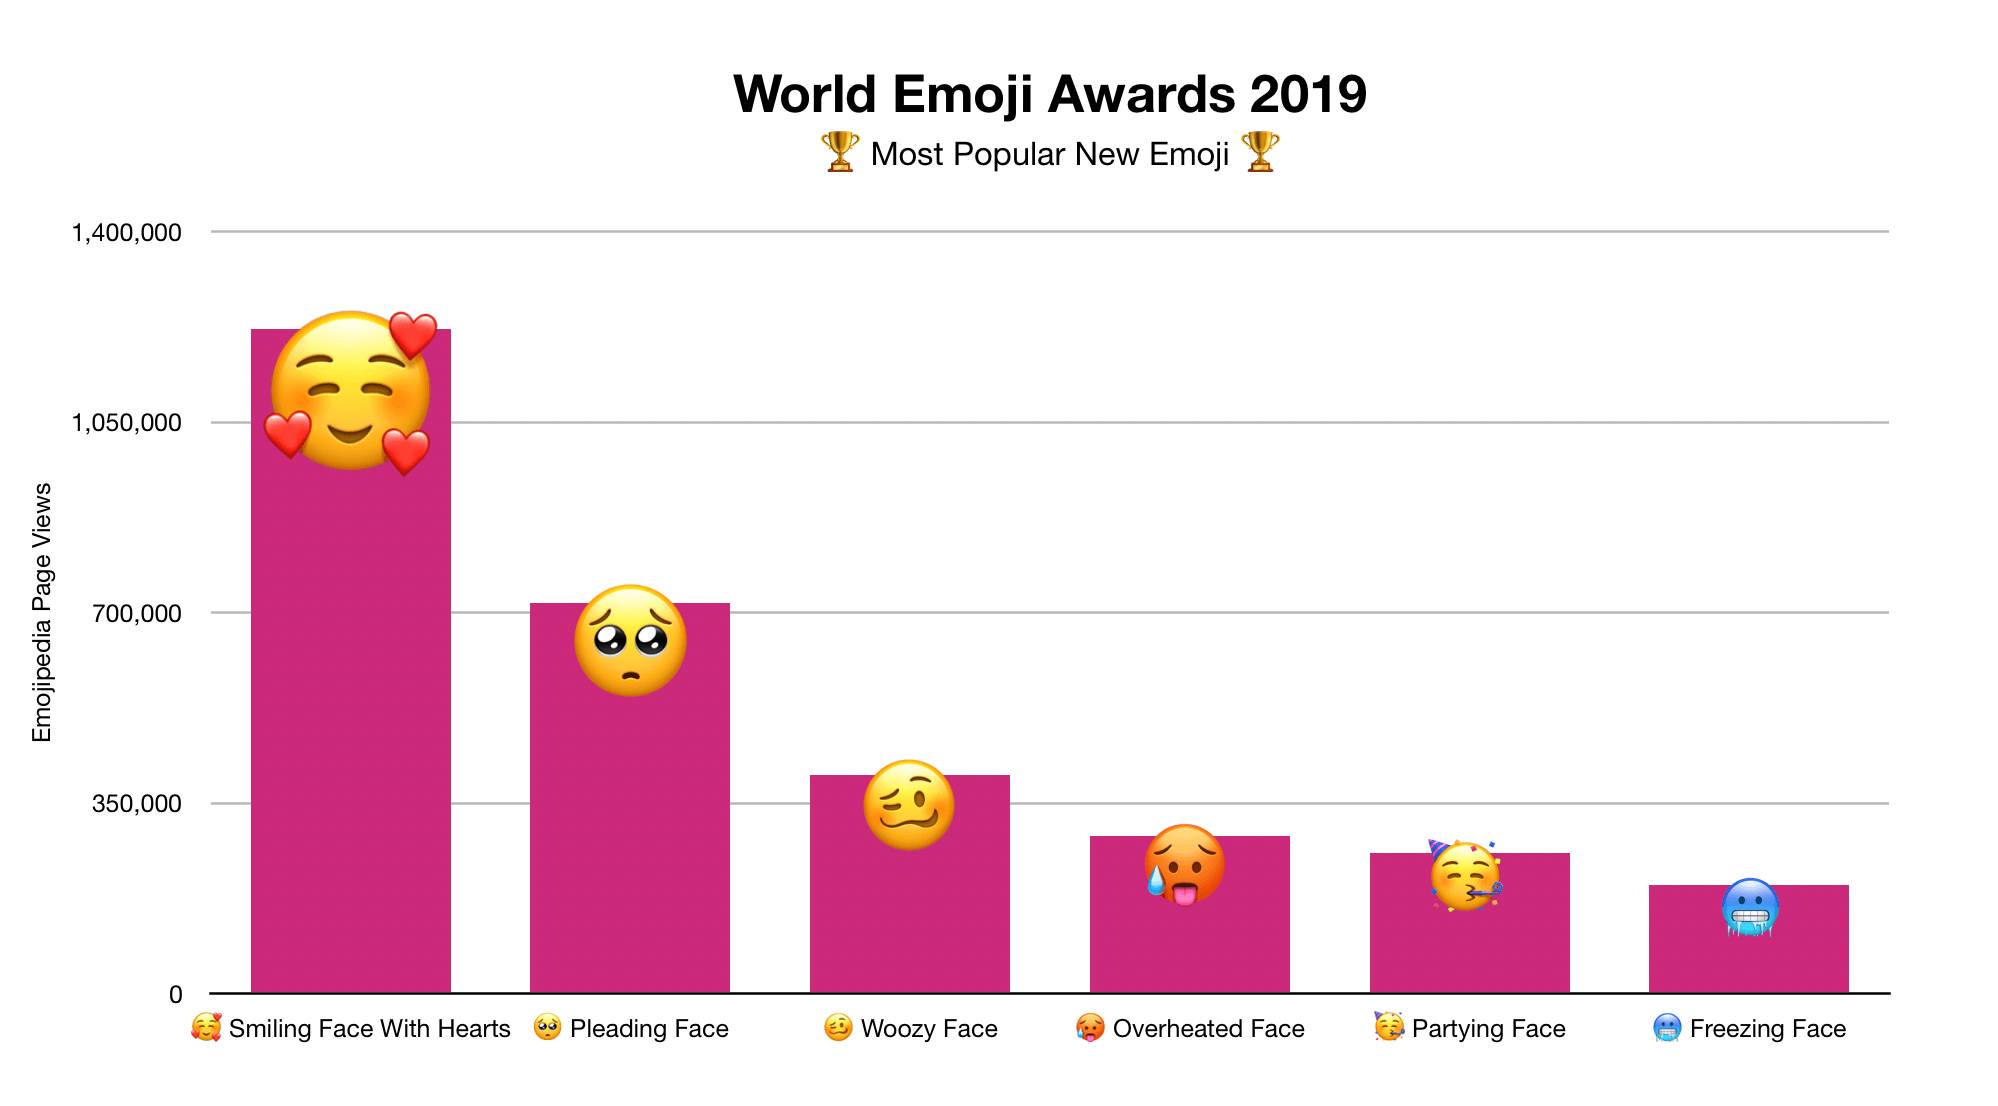 Welcher emoji bedeutet was